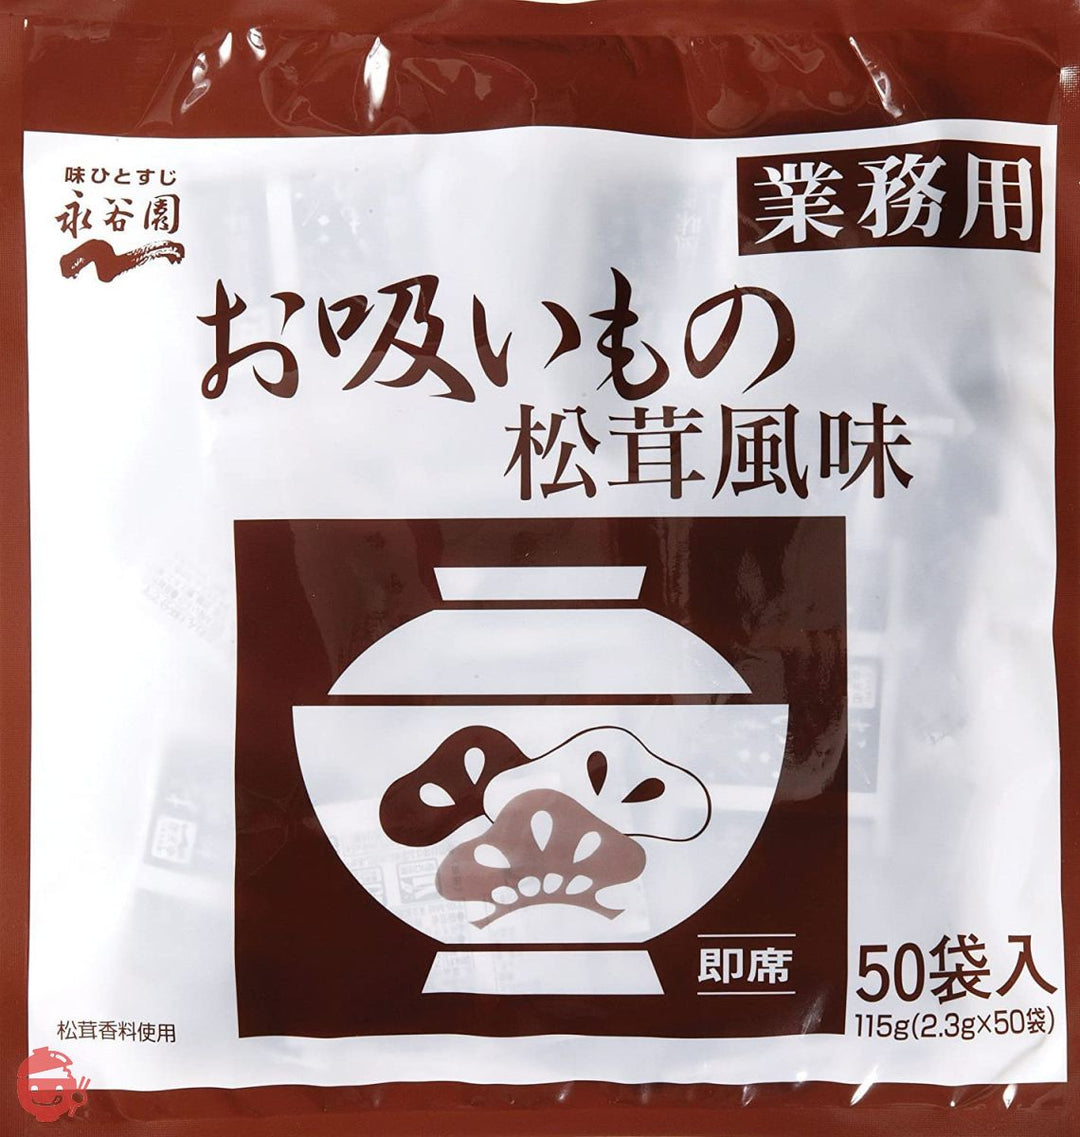 永谷園 業務用お吸いもの松茸風味 2.3g×50袋入の画像